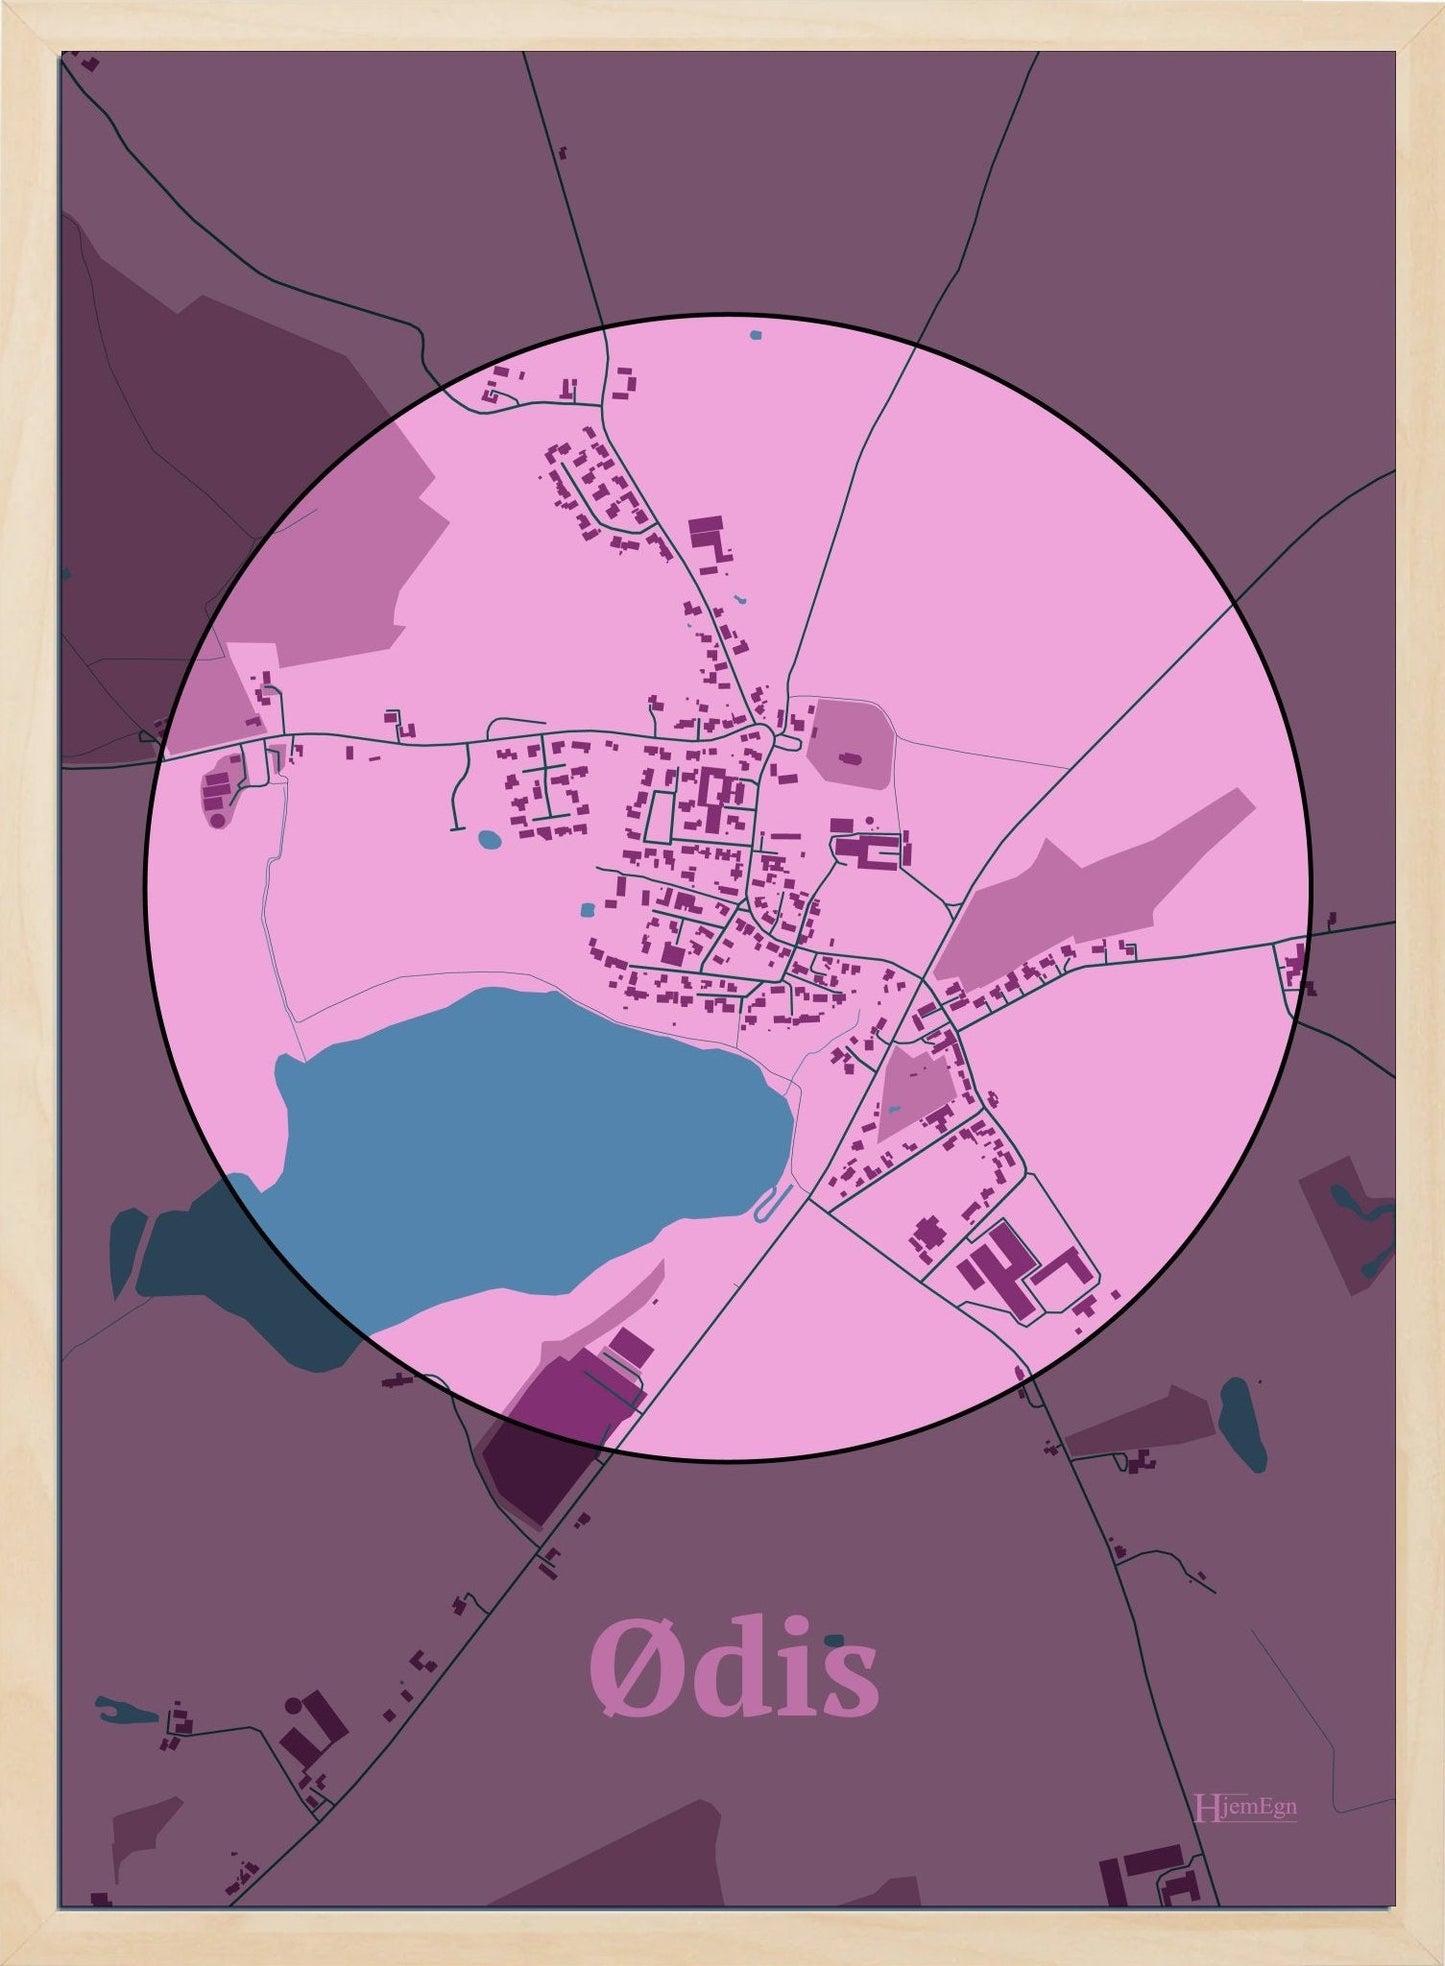 Ødis plakat i farve pastel rød og HjemEgn.dk design centrum. Design bykort for Ødis